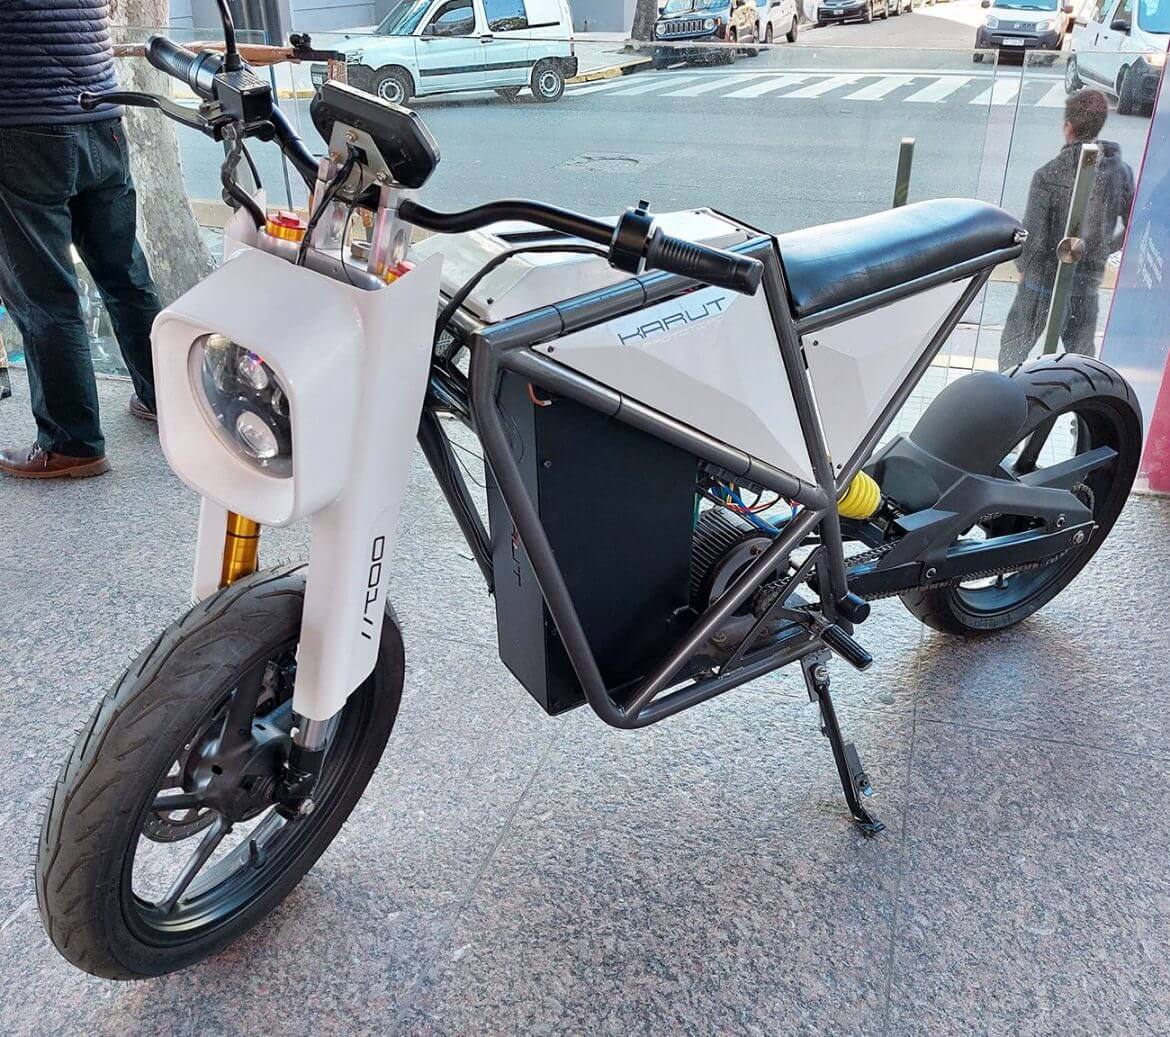 KARUT: un interesante proyecto de moto eléctrica del ingeniero mecánico Franco Odasso